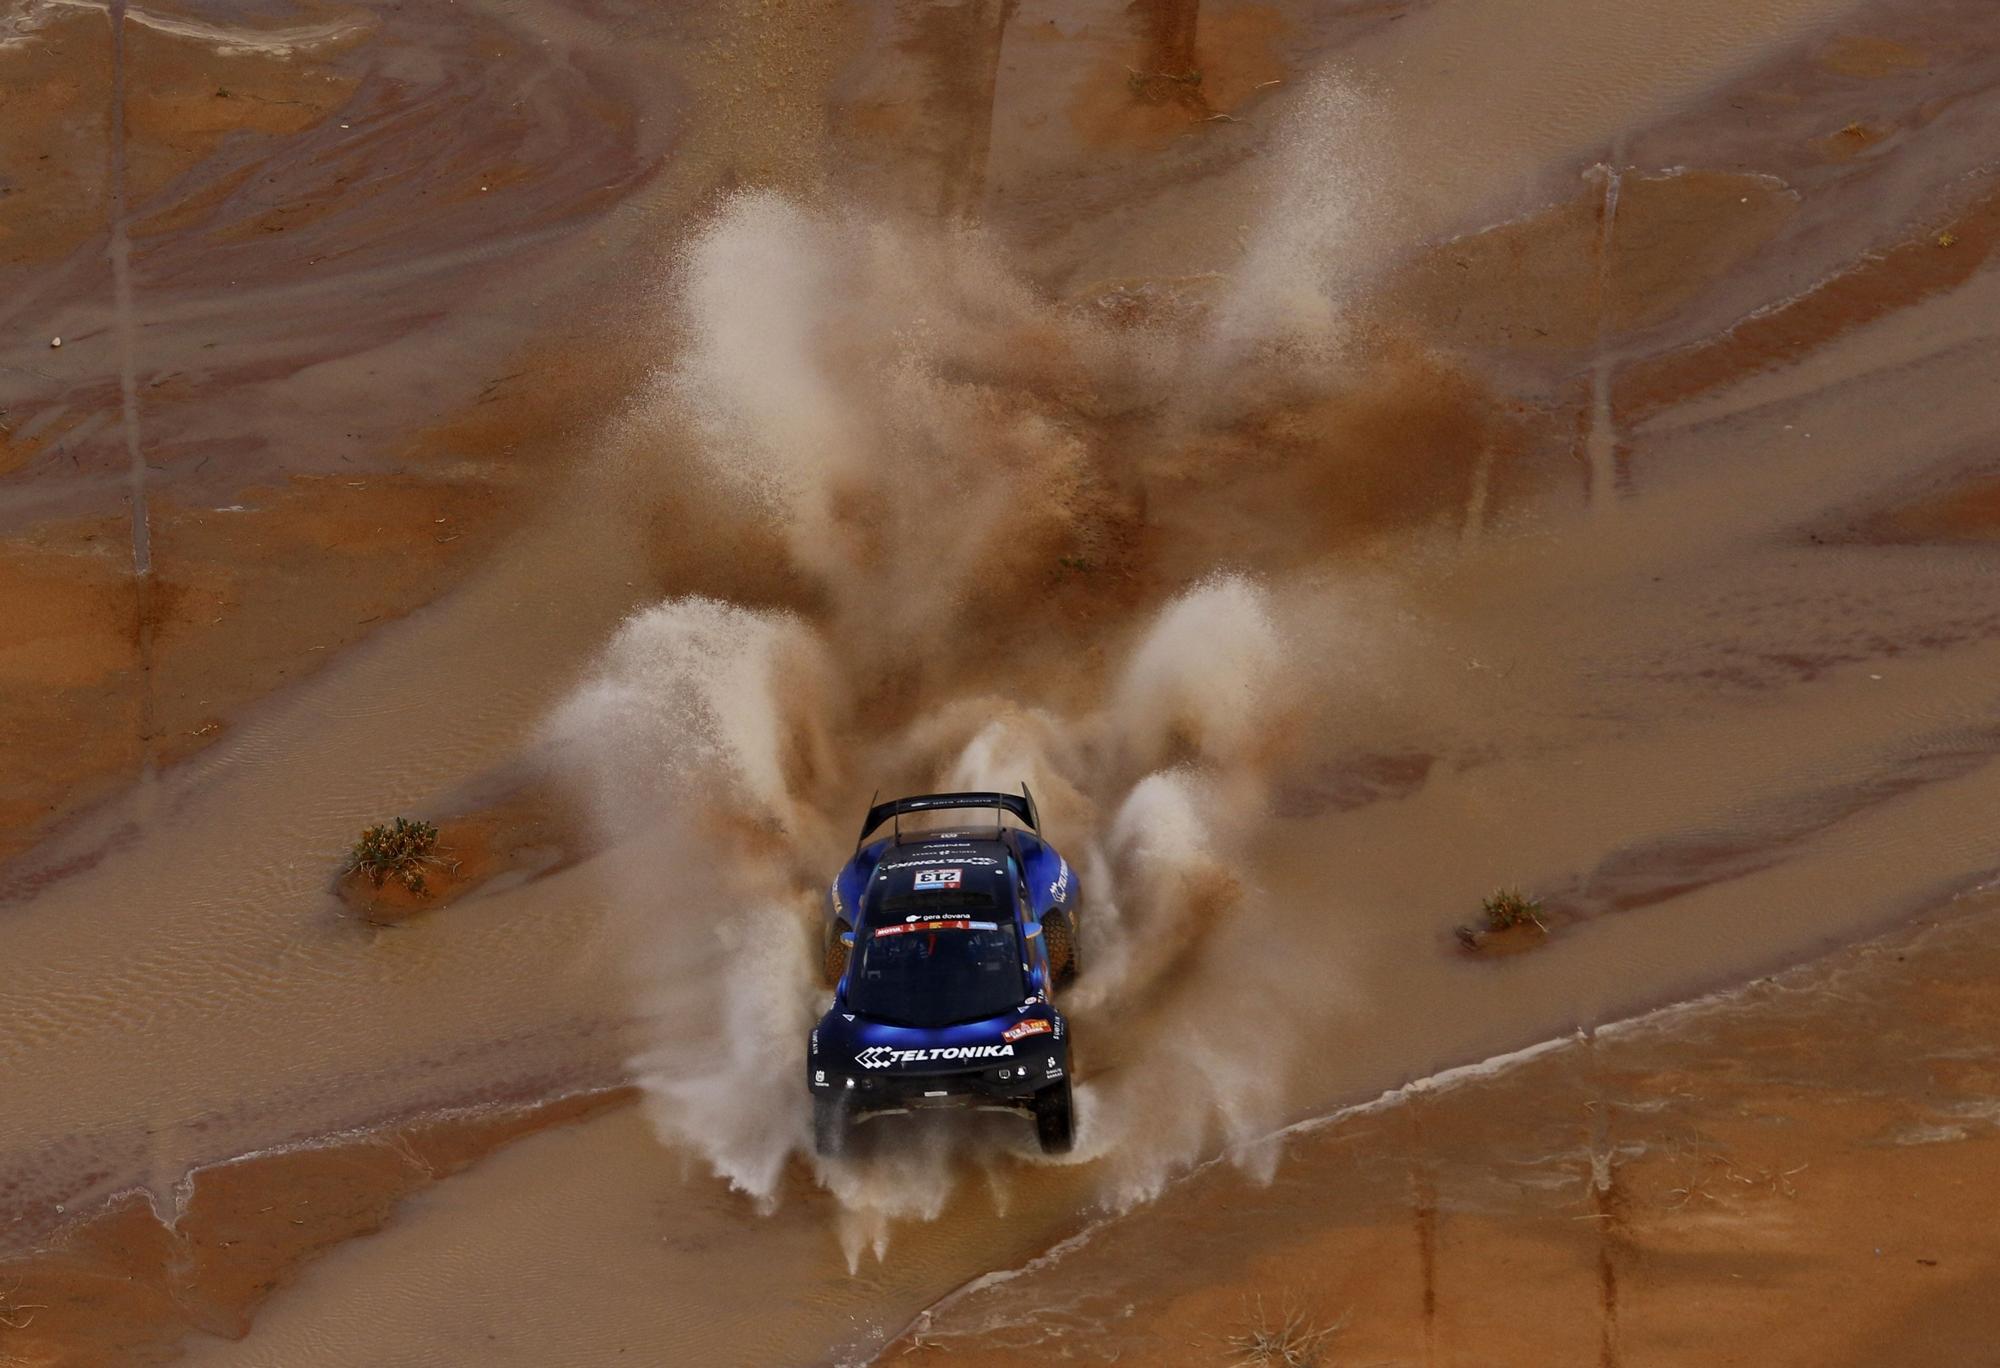 Dakar Rally (163387118).jpg